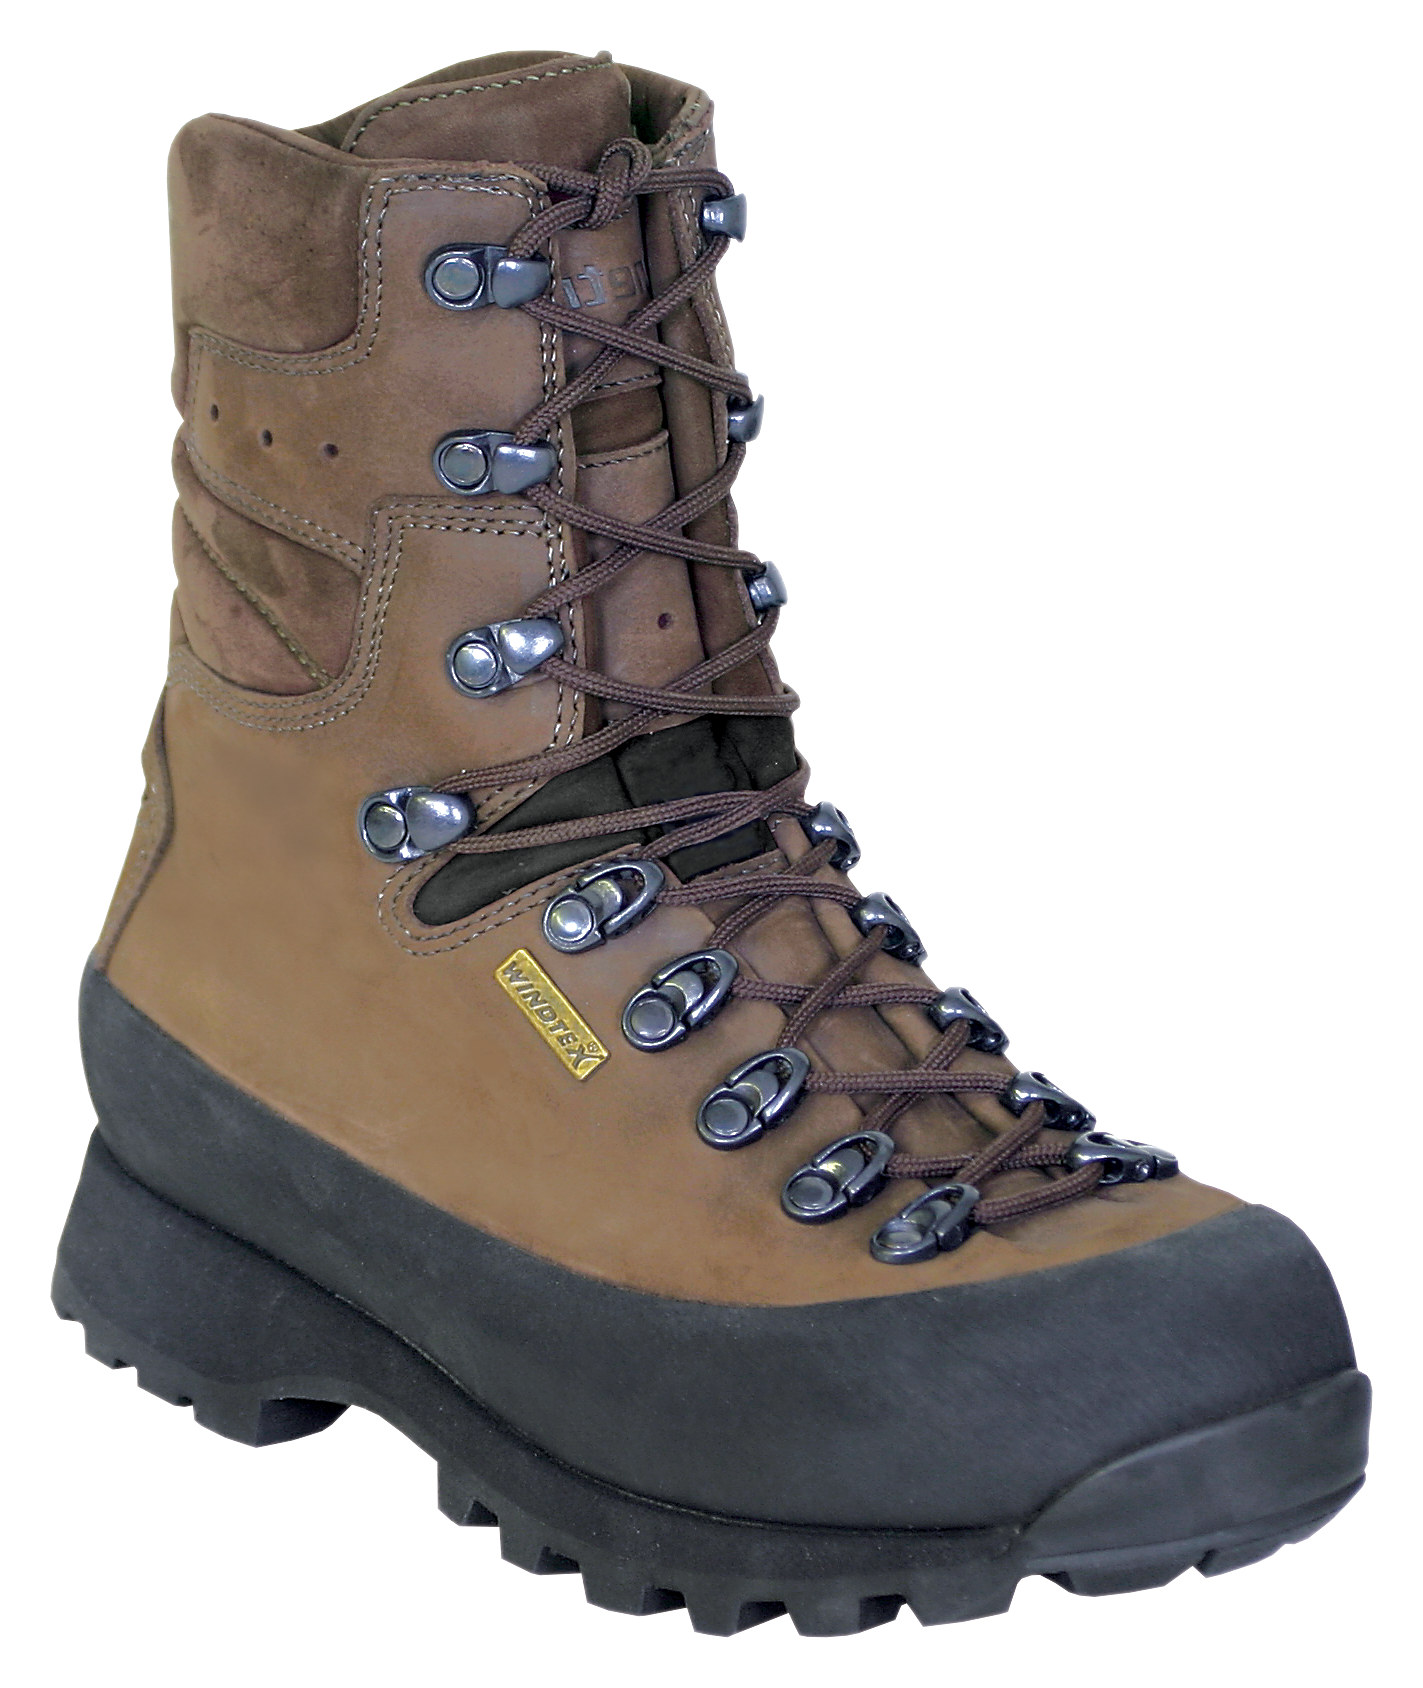 Kenetrek Hiker Waterproof Hiking Boots for Ladies - Brown -  6 5M